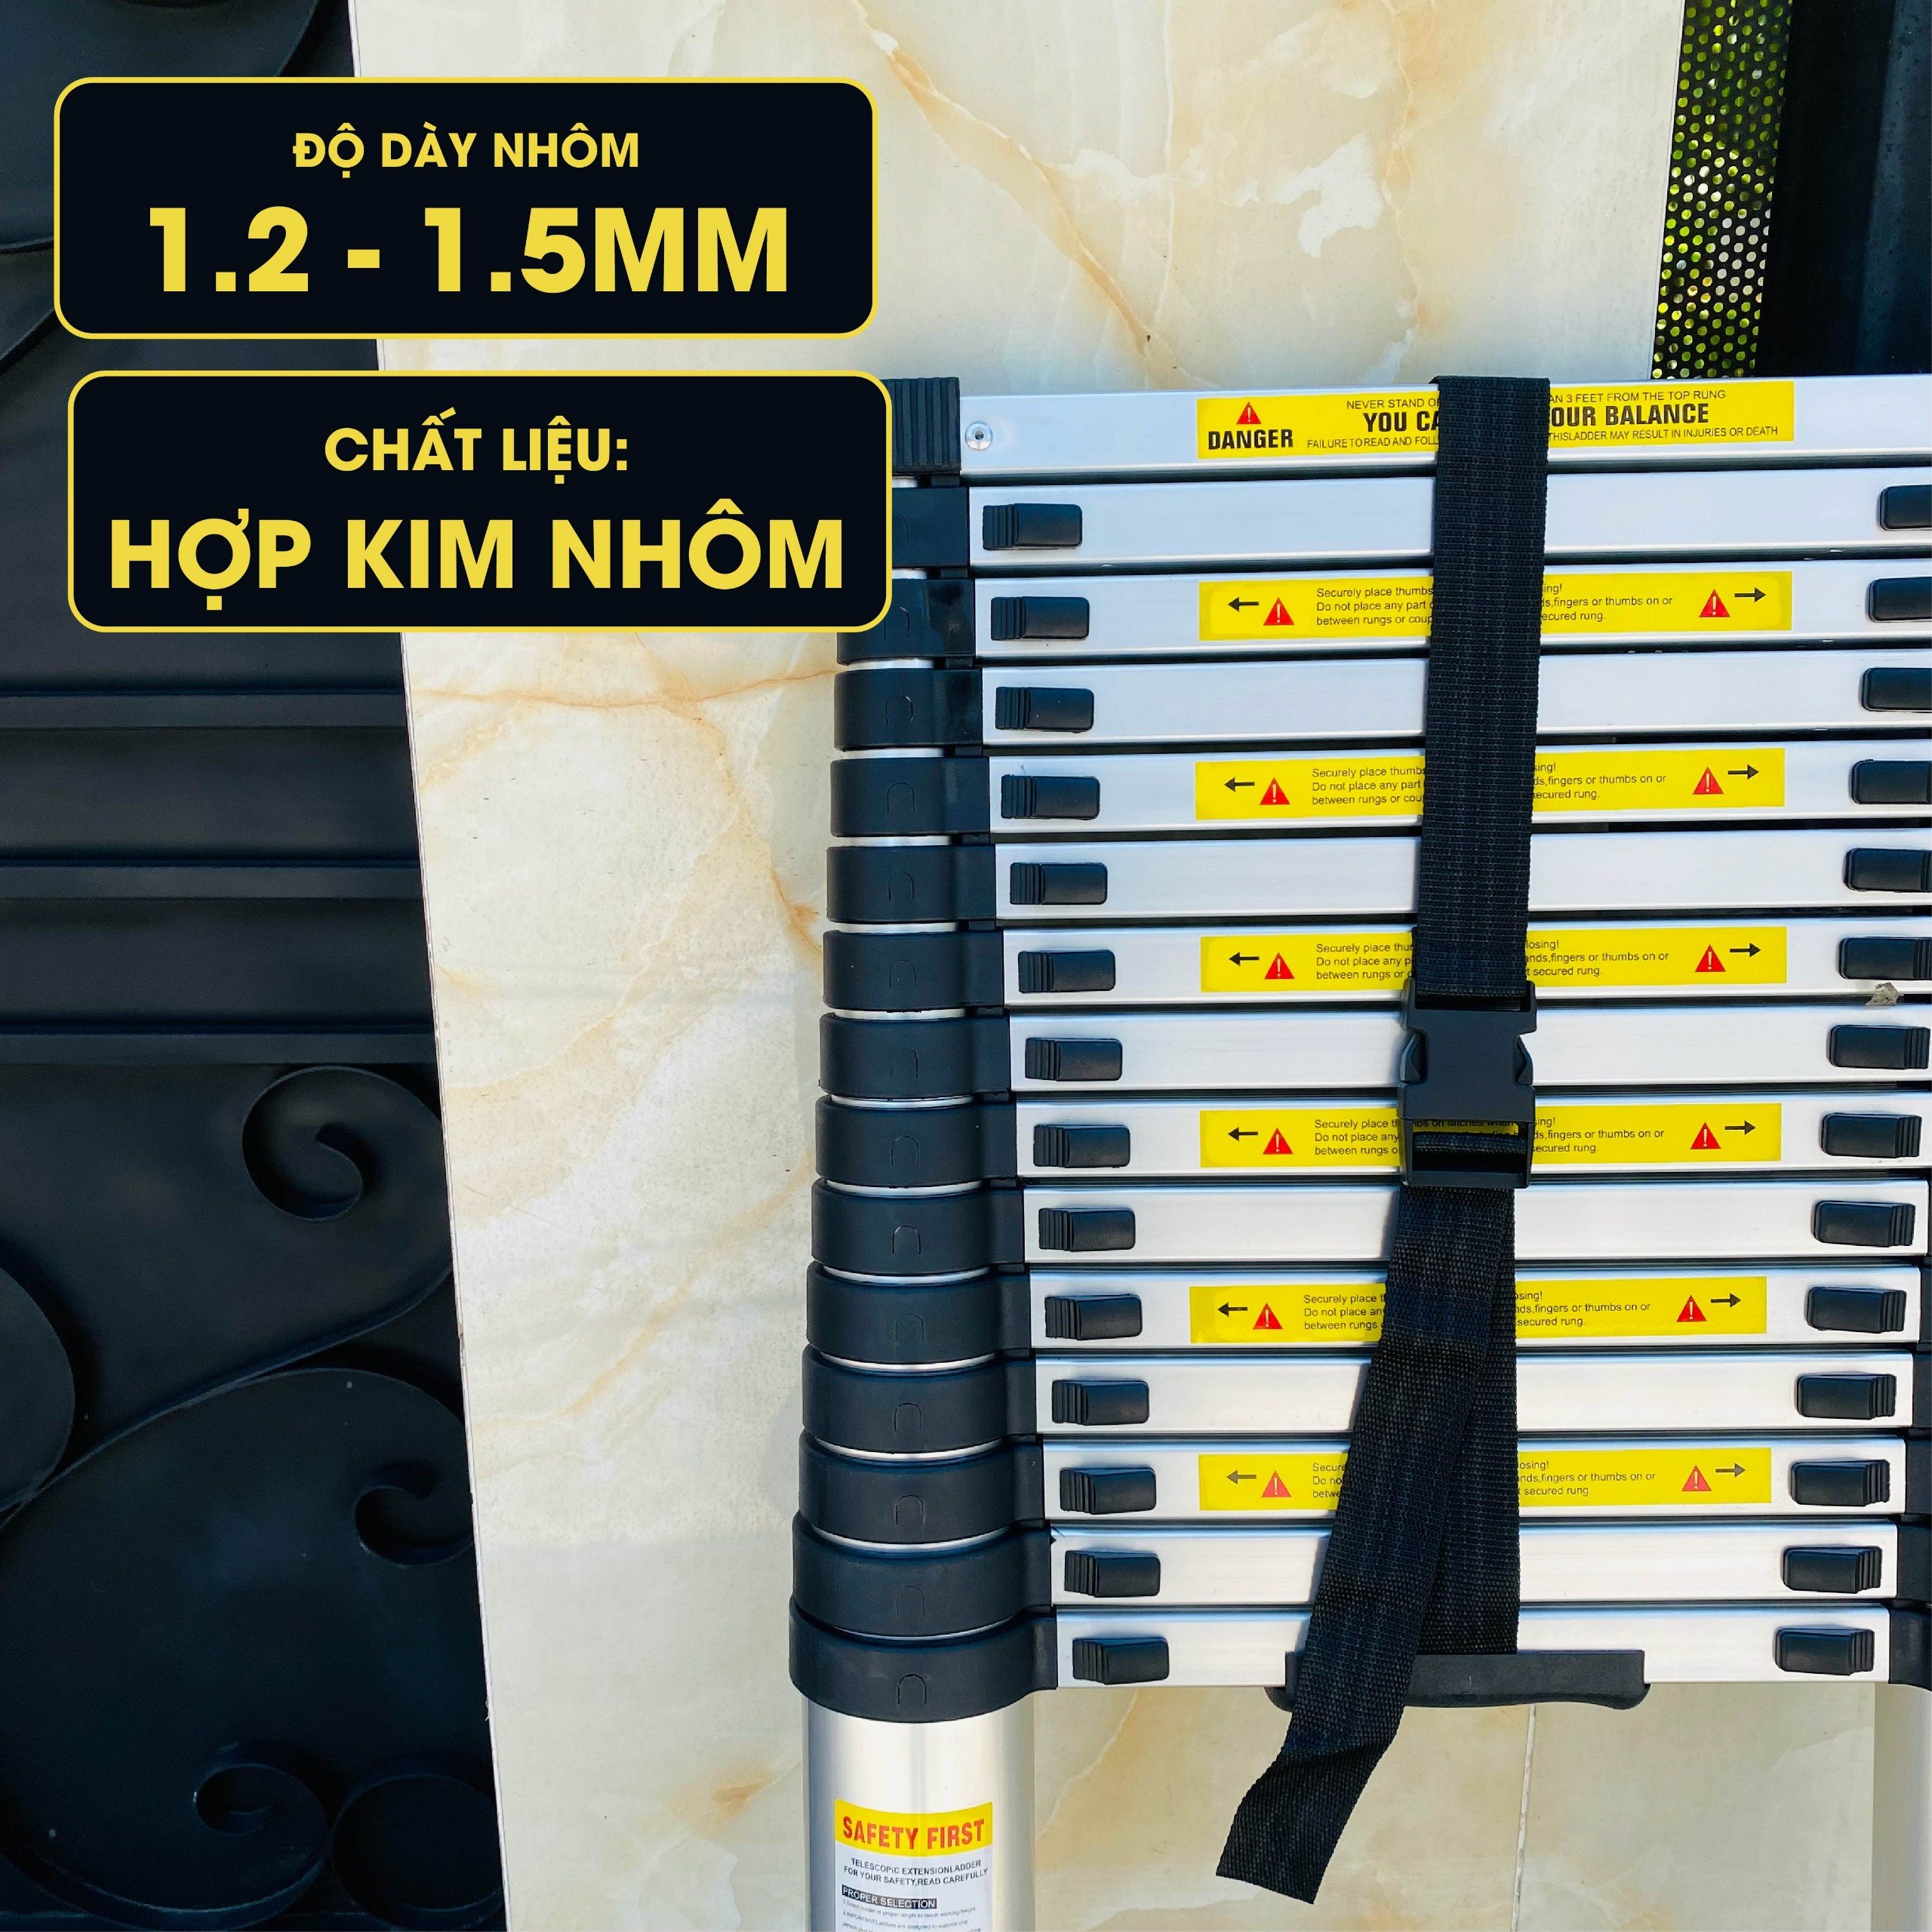 Thang nhôm rút đơn DIY TL-I-60 chiều cao sử dụng tối đa 6.0M